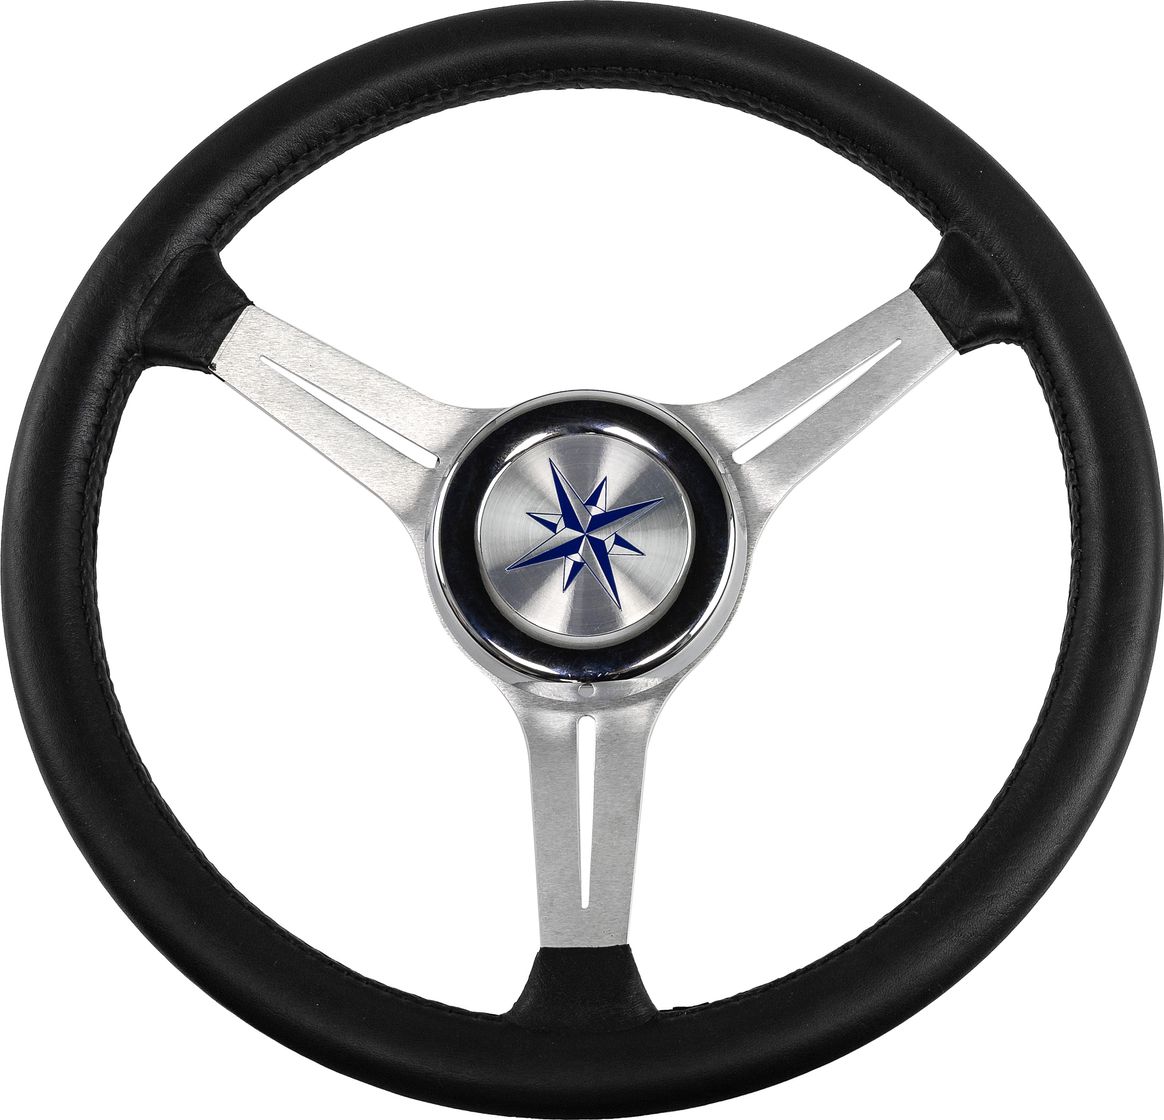 Рулевое колесо LYRA обод черный, спицы серебряные д. 370 мм VN137003-01 рулевое колесо leader plast обод серебряные спицы д 330 мм vn8330 01